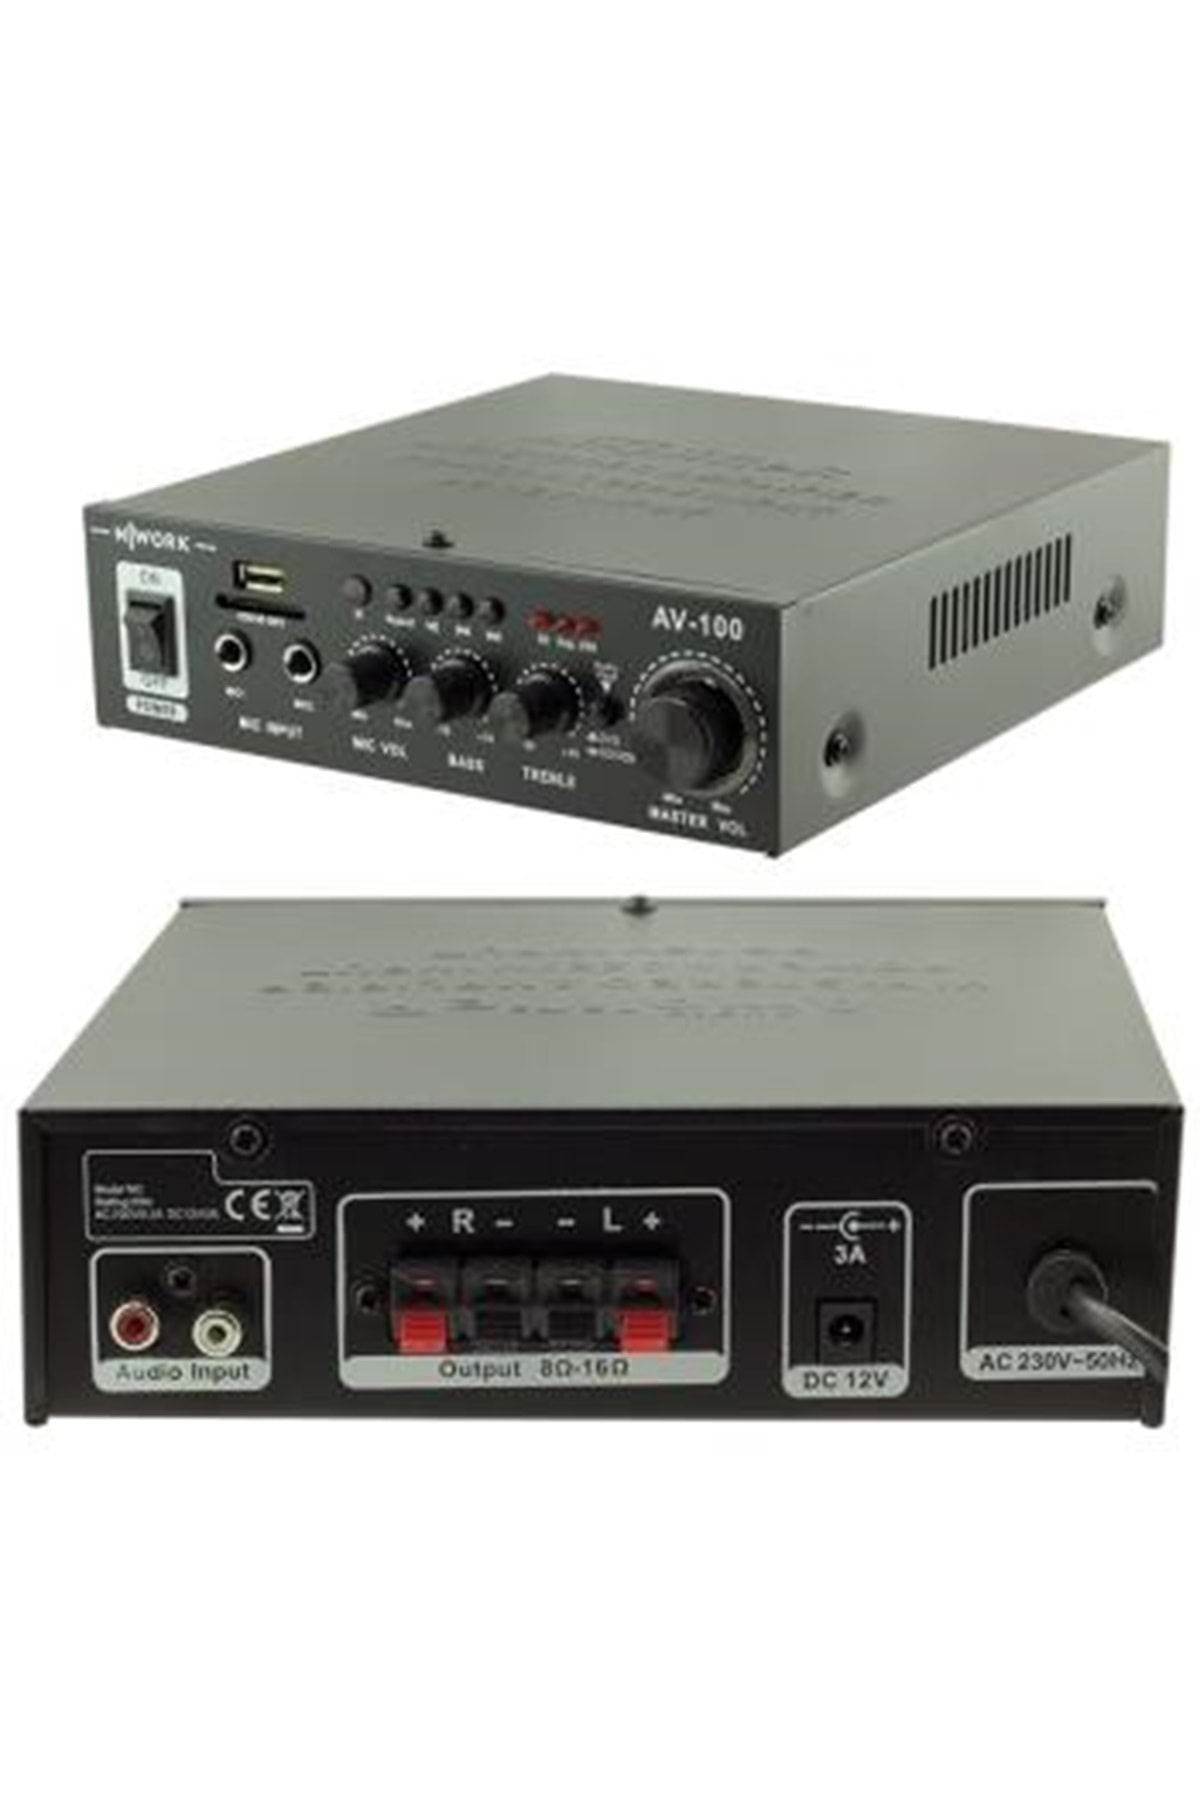 Network Nwork Hıfı Av-100 Stereo Audio Amplifier